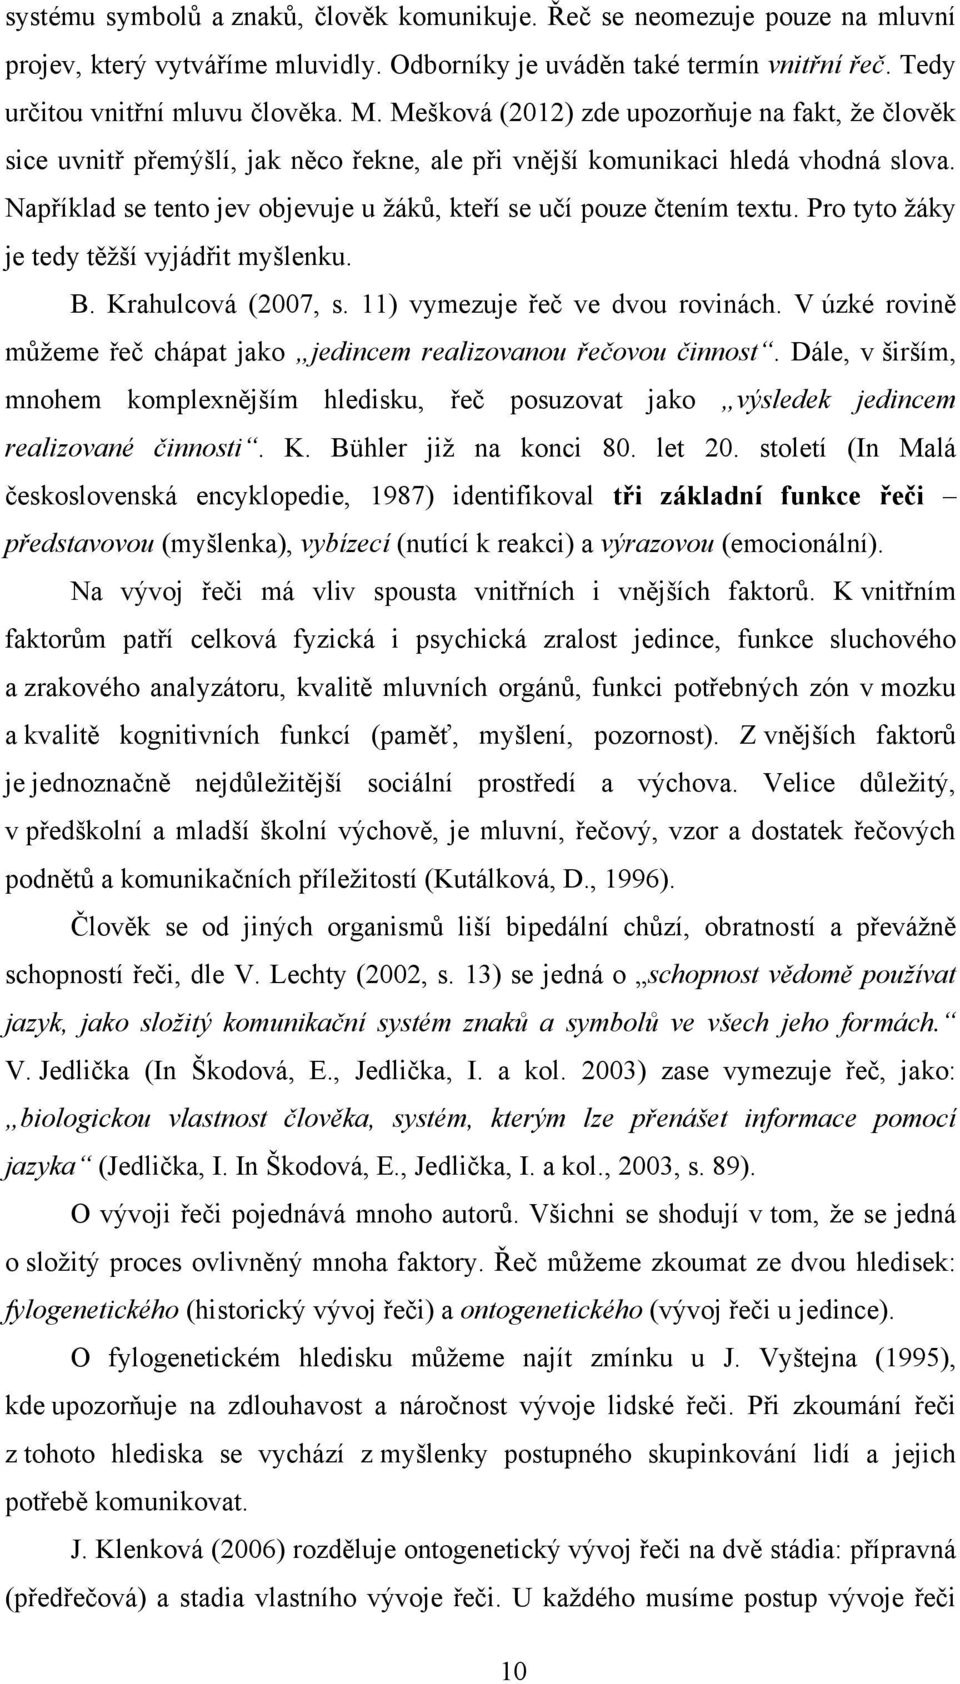 Například se tento jev objevuje u ţákŧ, kteří se učí pouze čtením textu. Pro tyto ţáky je tedy těţší vyjádřit myšlenku. B. Krahulcová (2007, s. 11) vymezuje řeč ve dvou rovinách.